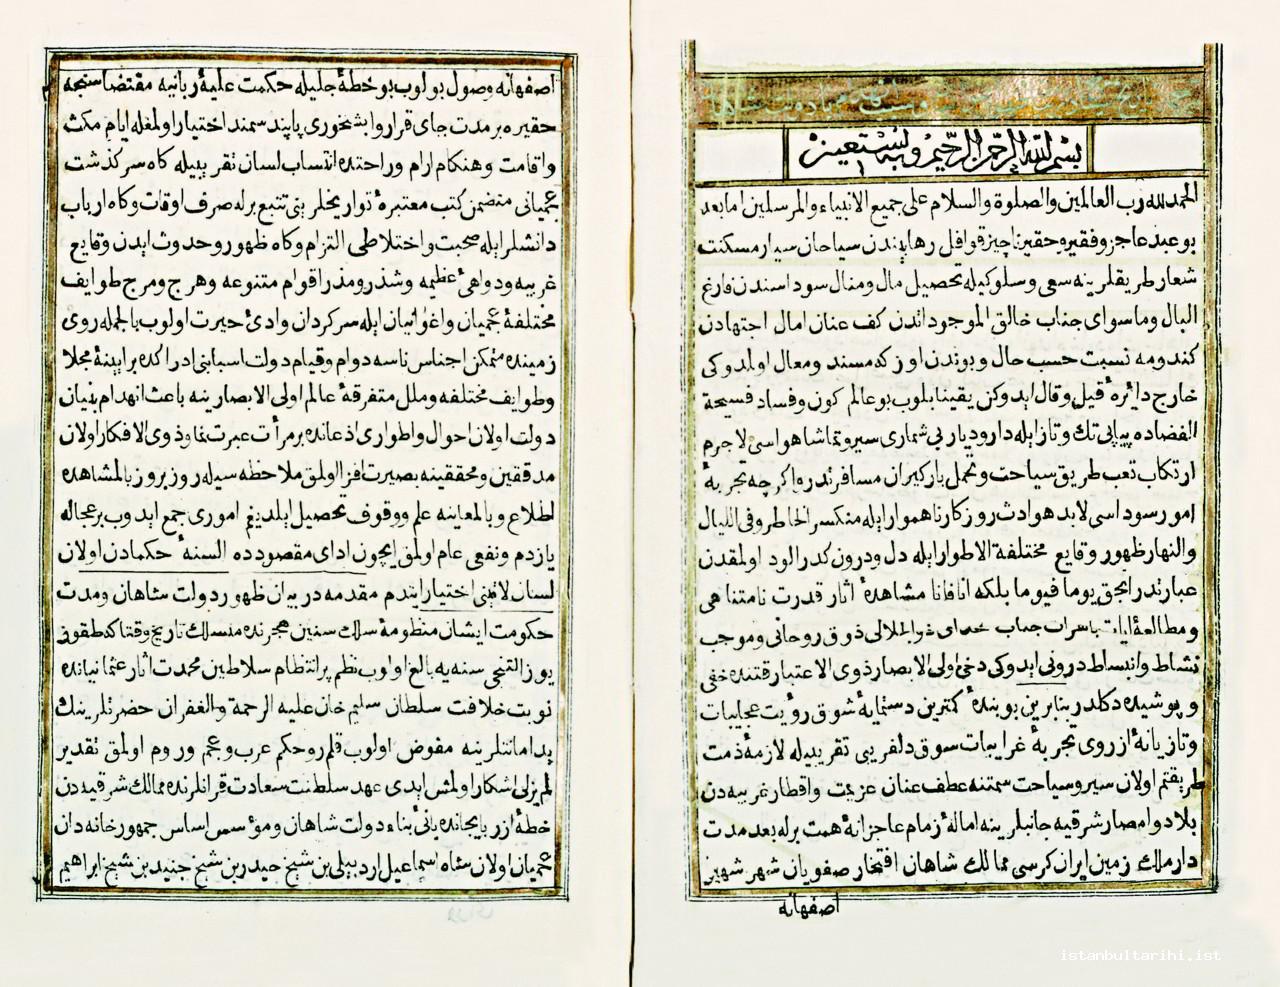 1- <em>Tarikh al-Sayyah dar Bayan al-Zuhur al-Aghwaniyan wa Sabab al-Inhidam al-Bina al-Dawlat al-Shahan al-Safawiyyan</em> published by Müteferrika Publishing House